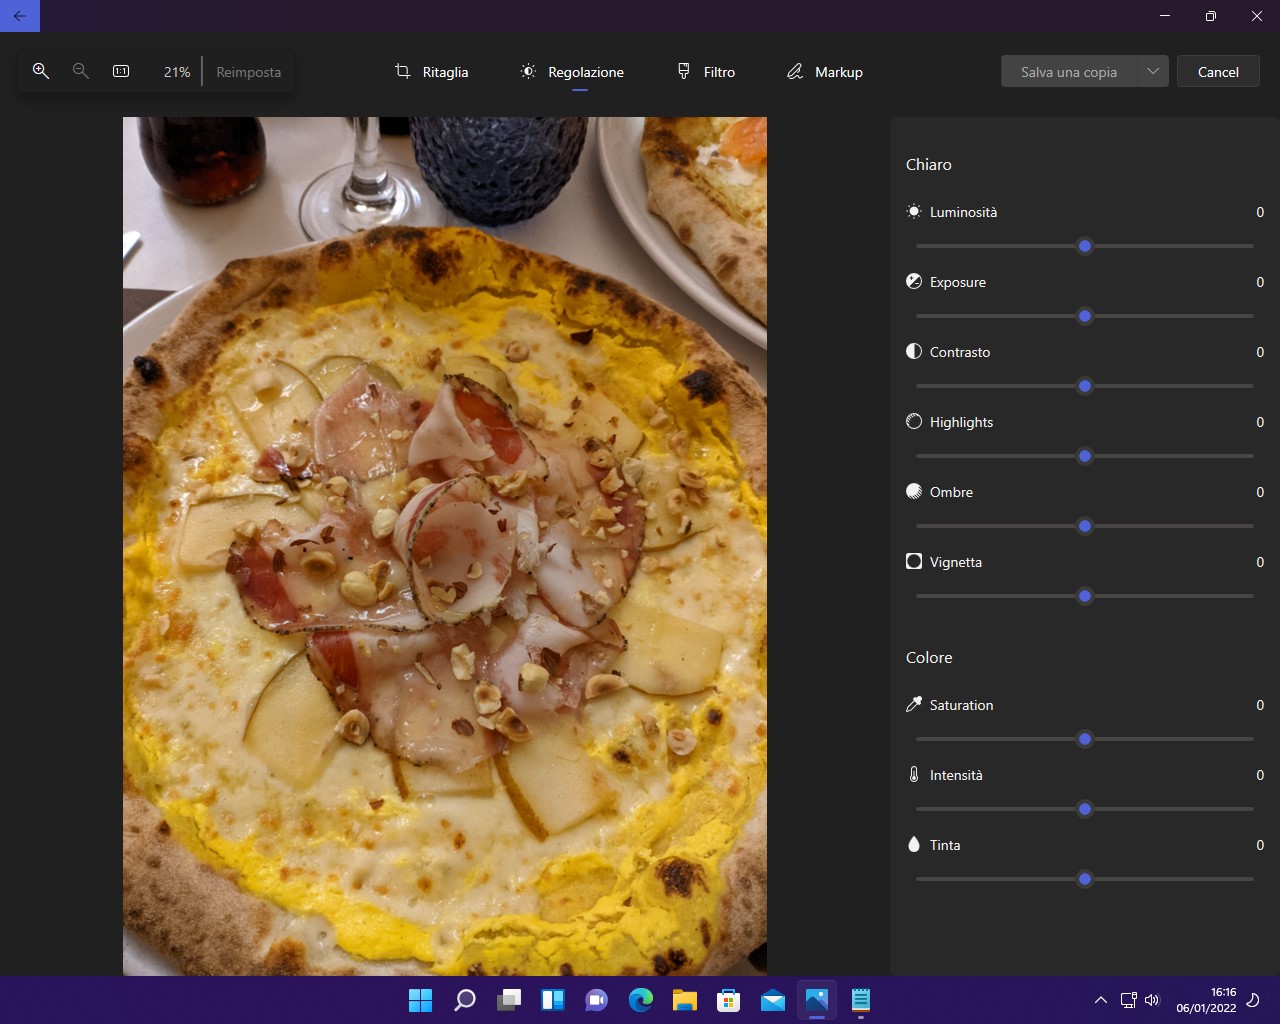 Microsoft Foto per Windows 11 si aggiorna per tutti con nuove opzioni per la modifica delle immagini